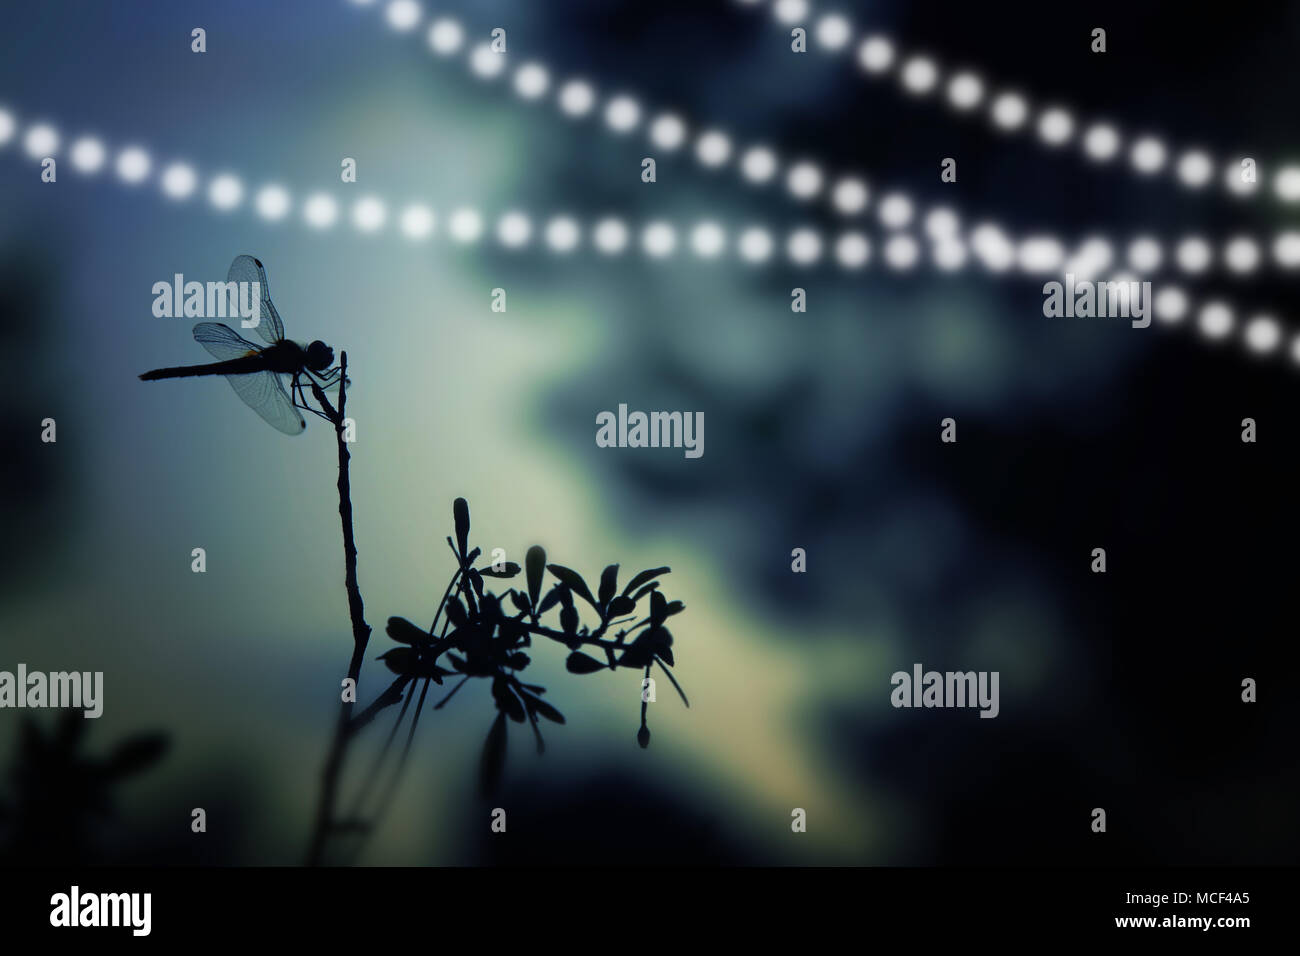 Abstrakte und magische Bild von Dragonfly Silhouette und Firefly fliegen in der Nacht den Wald. Märchen Konzept Stockfoto